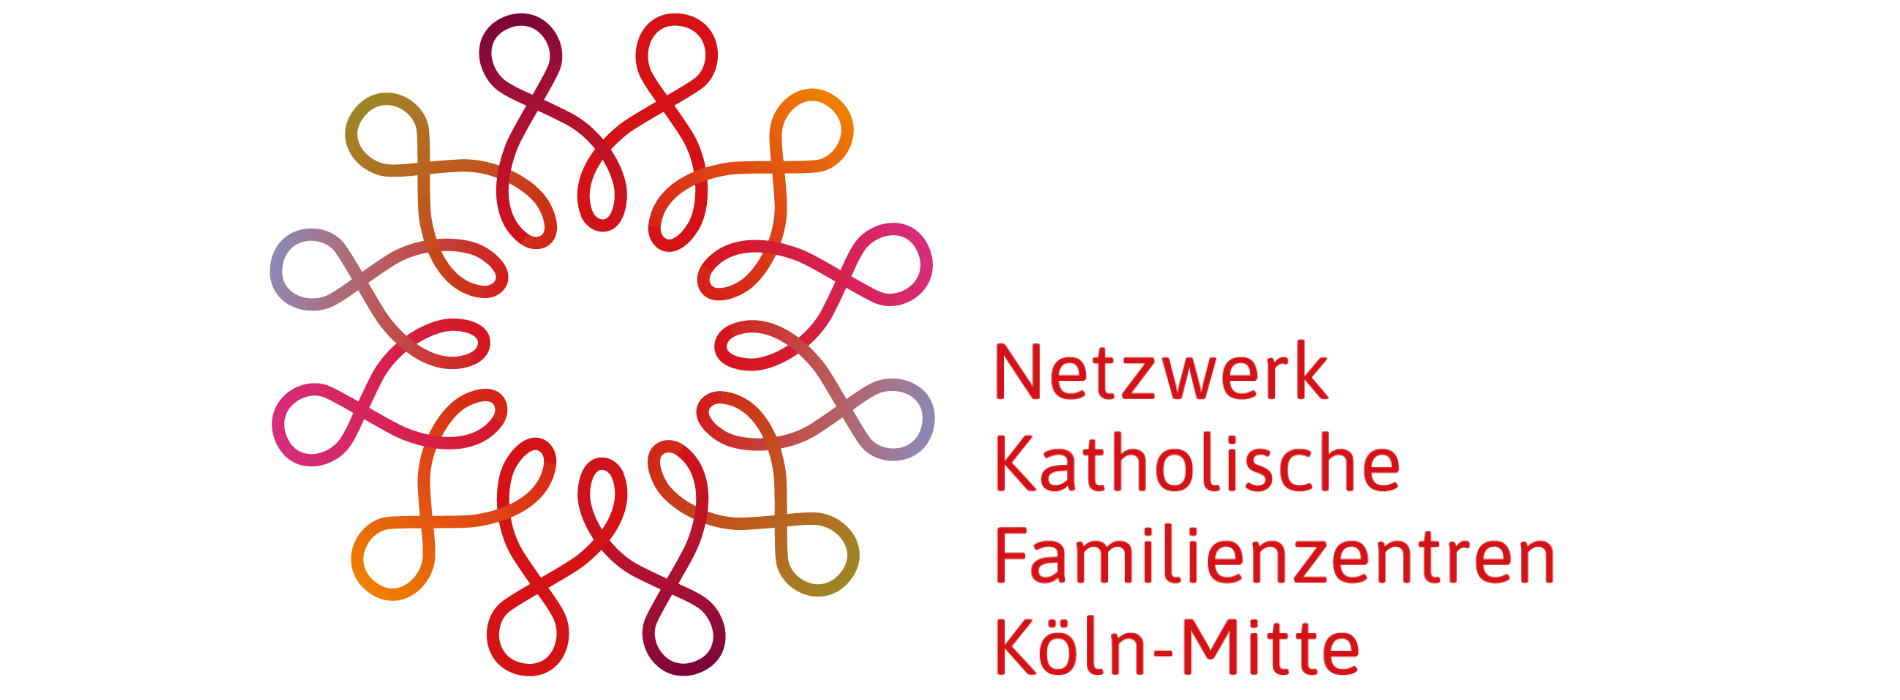 Katholische Kitas und Familienzentren in Köln-Mitte: Informationen und Kontakt